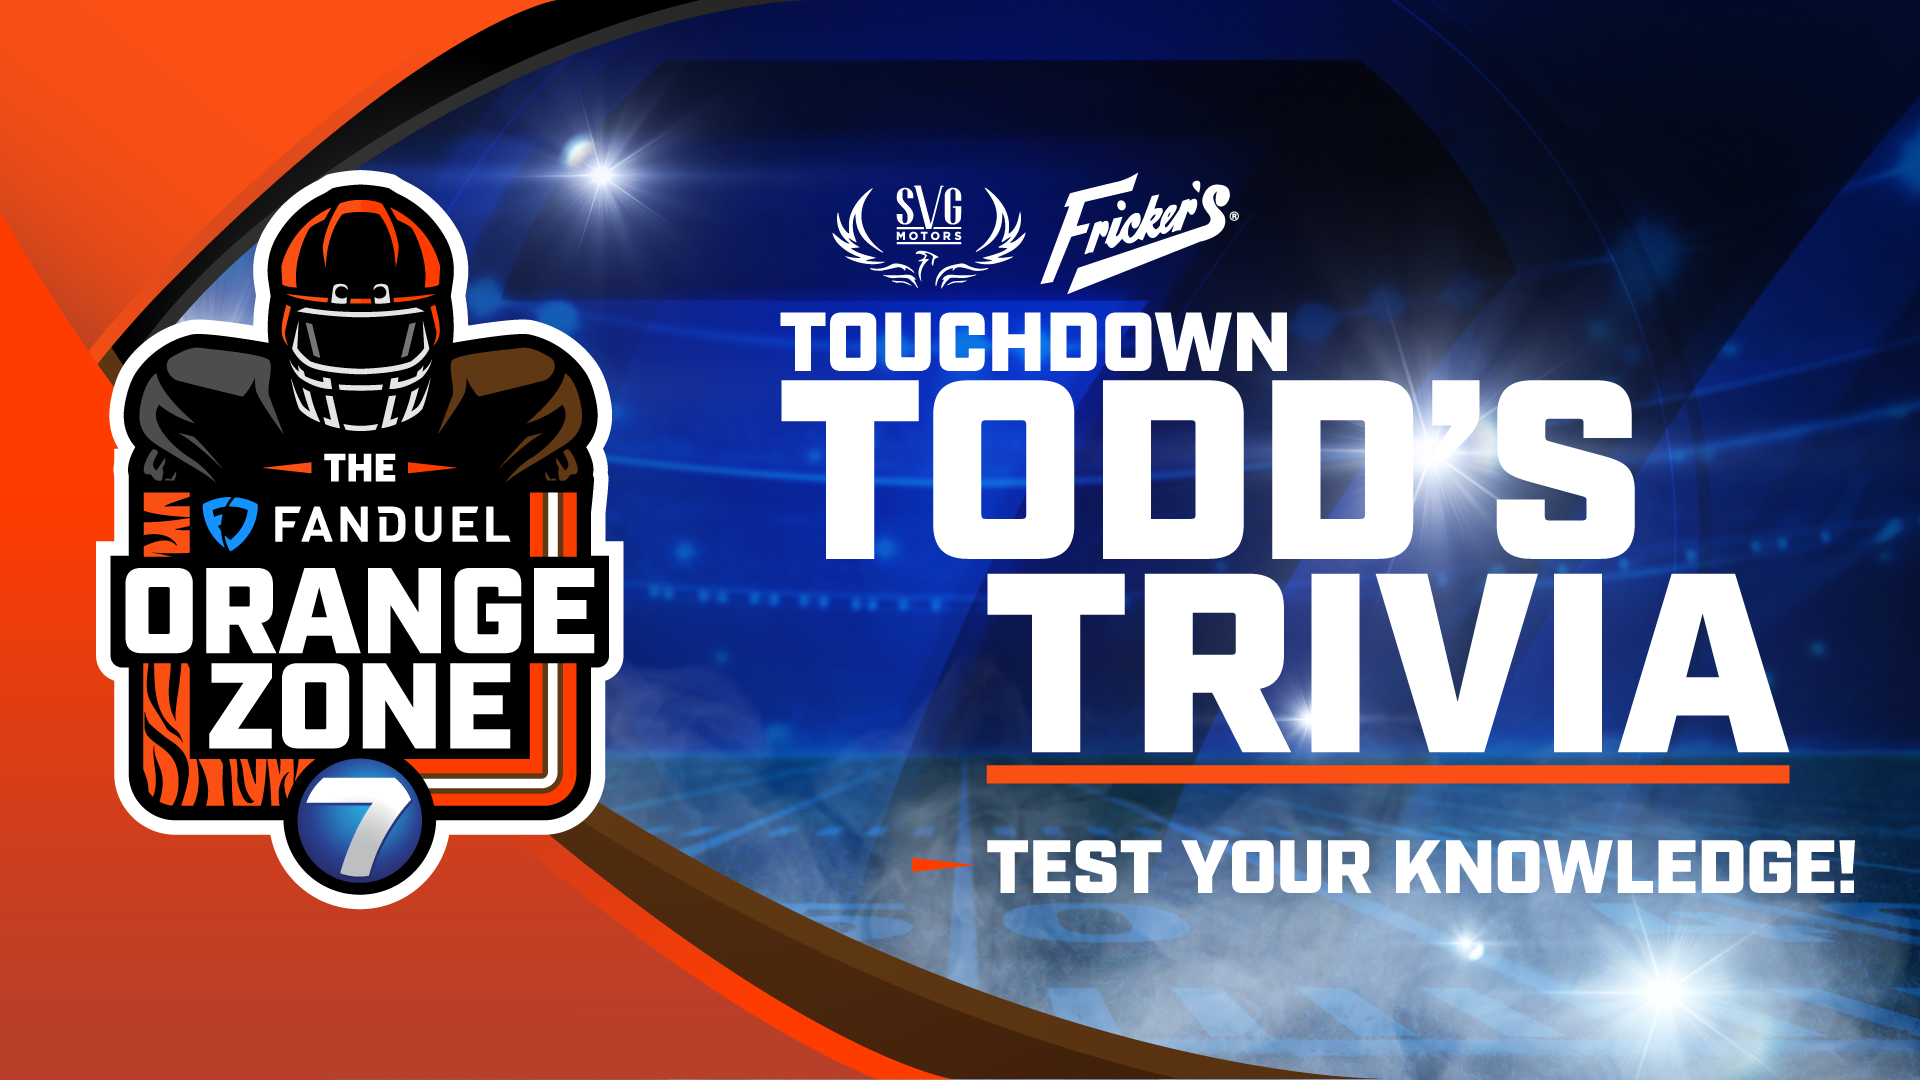 Touchdown Todd's Trivia